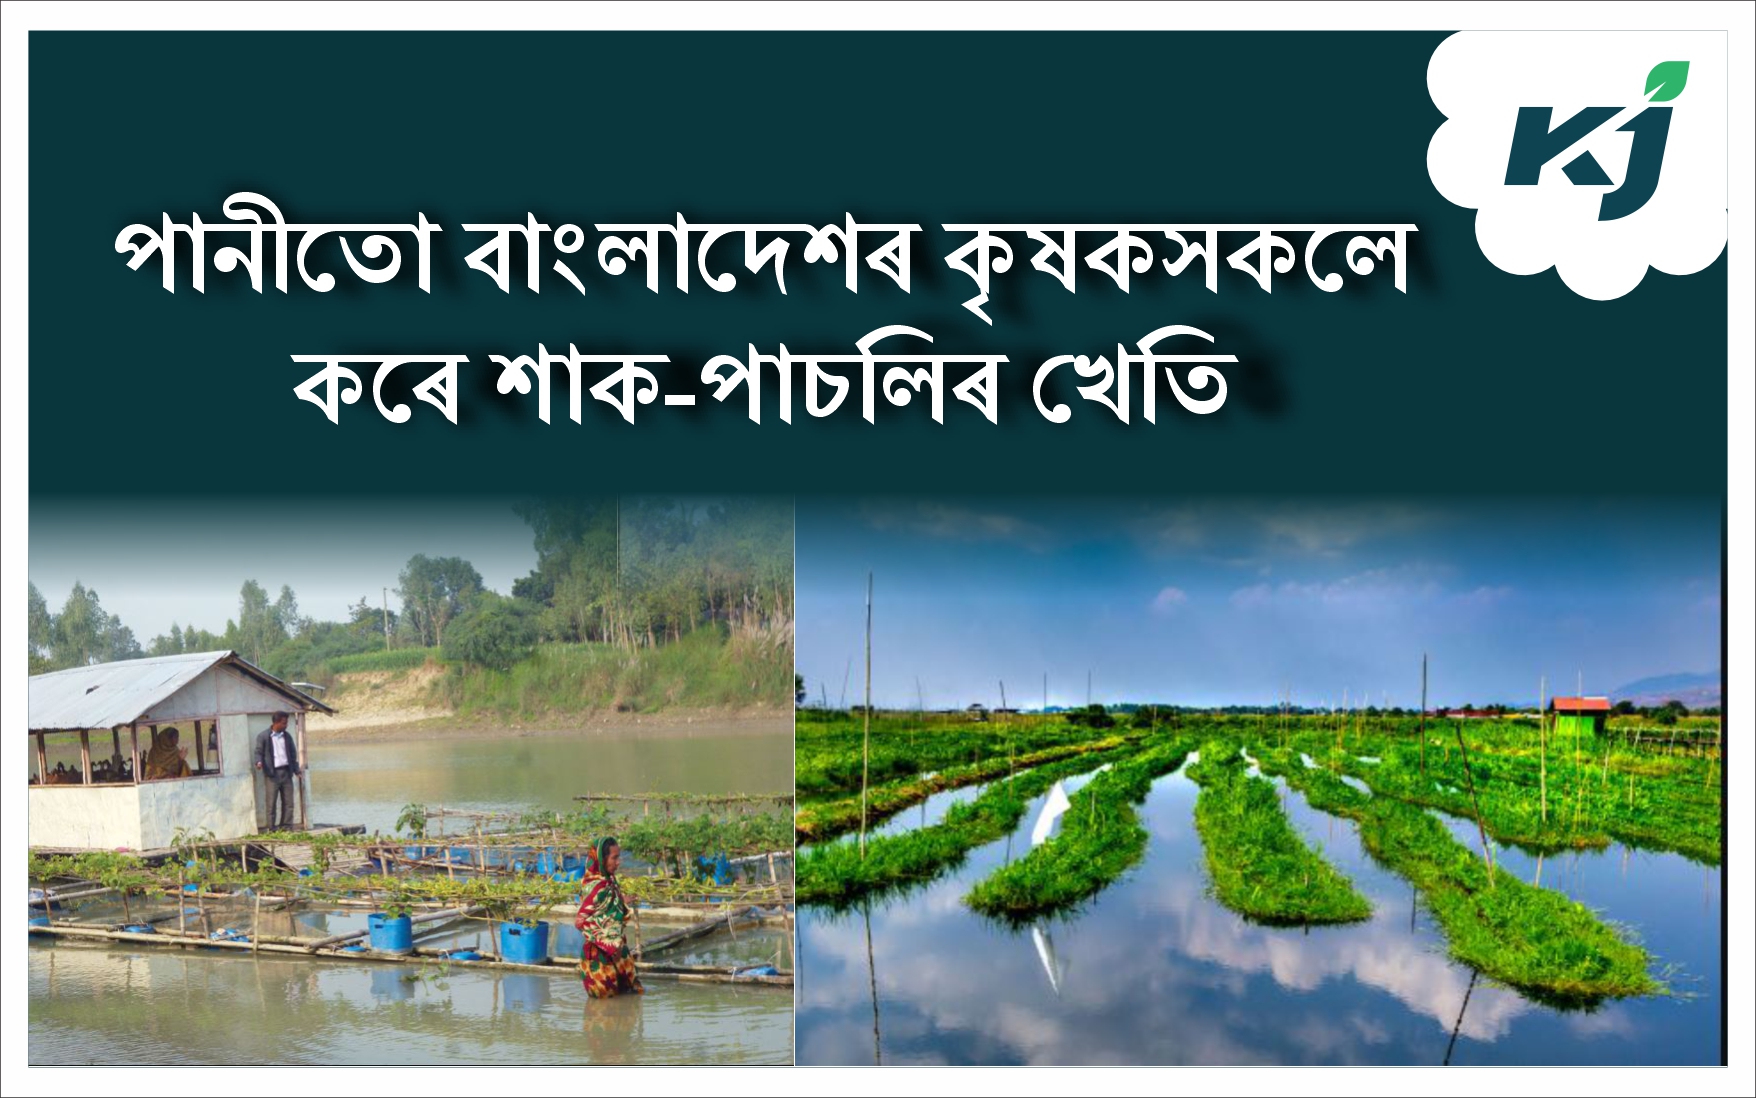 Floating Gardening Practice in Bangladesh